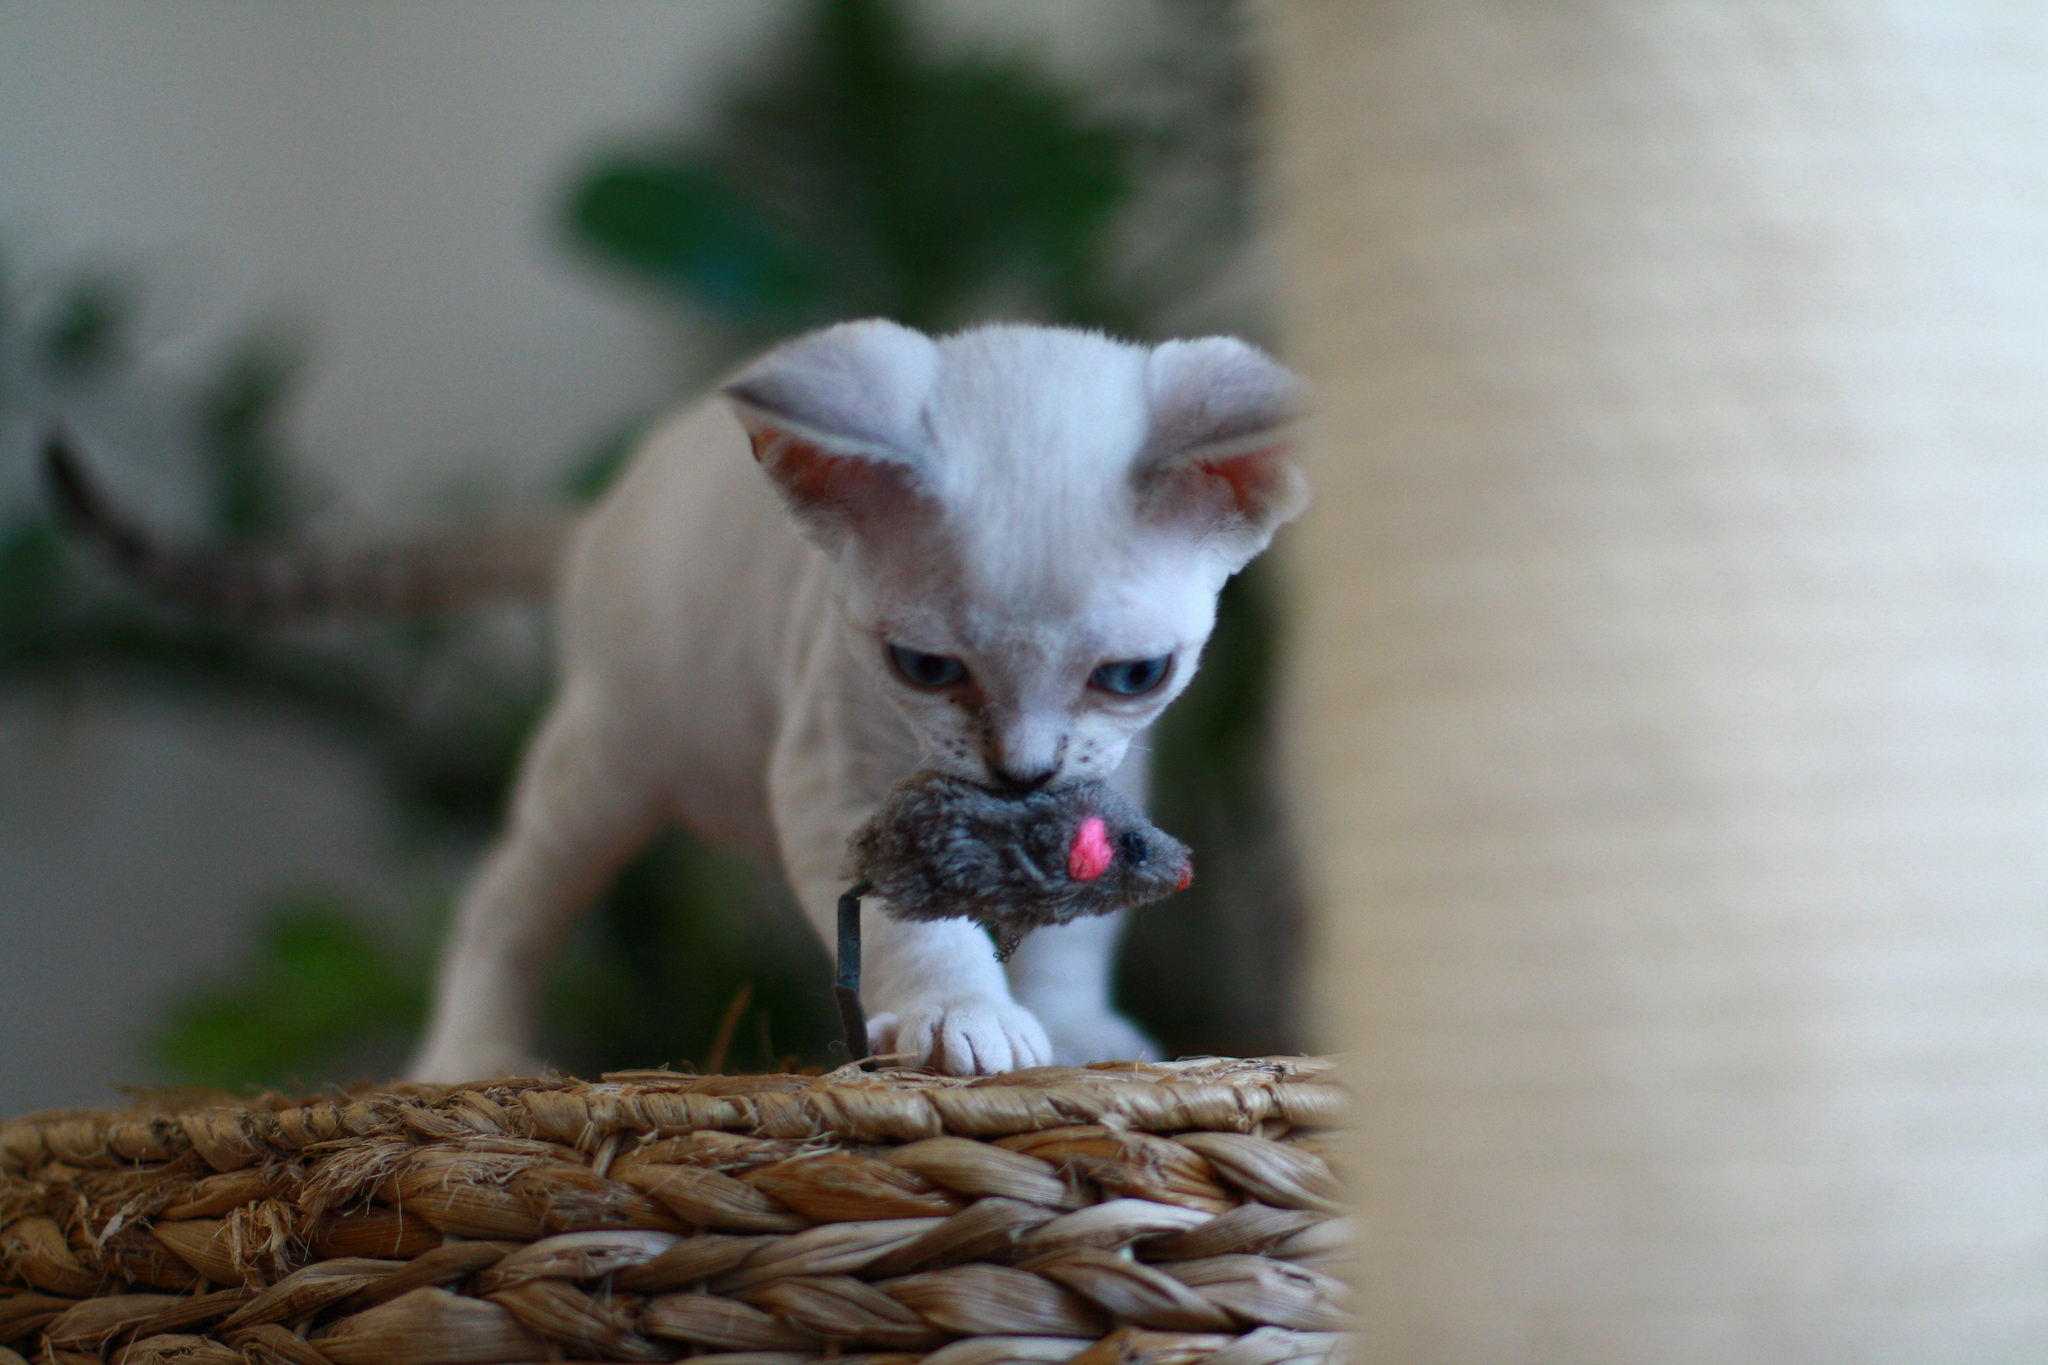 Kitten Devon Rex with a toy